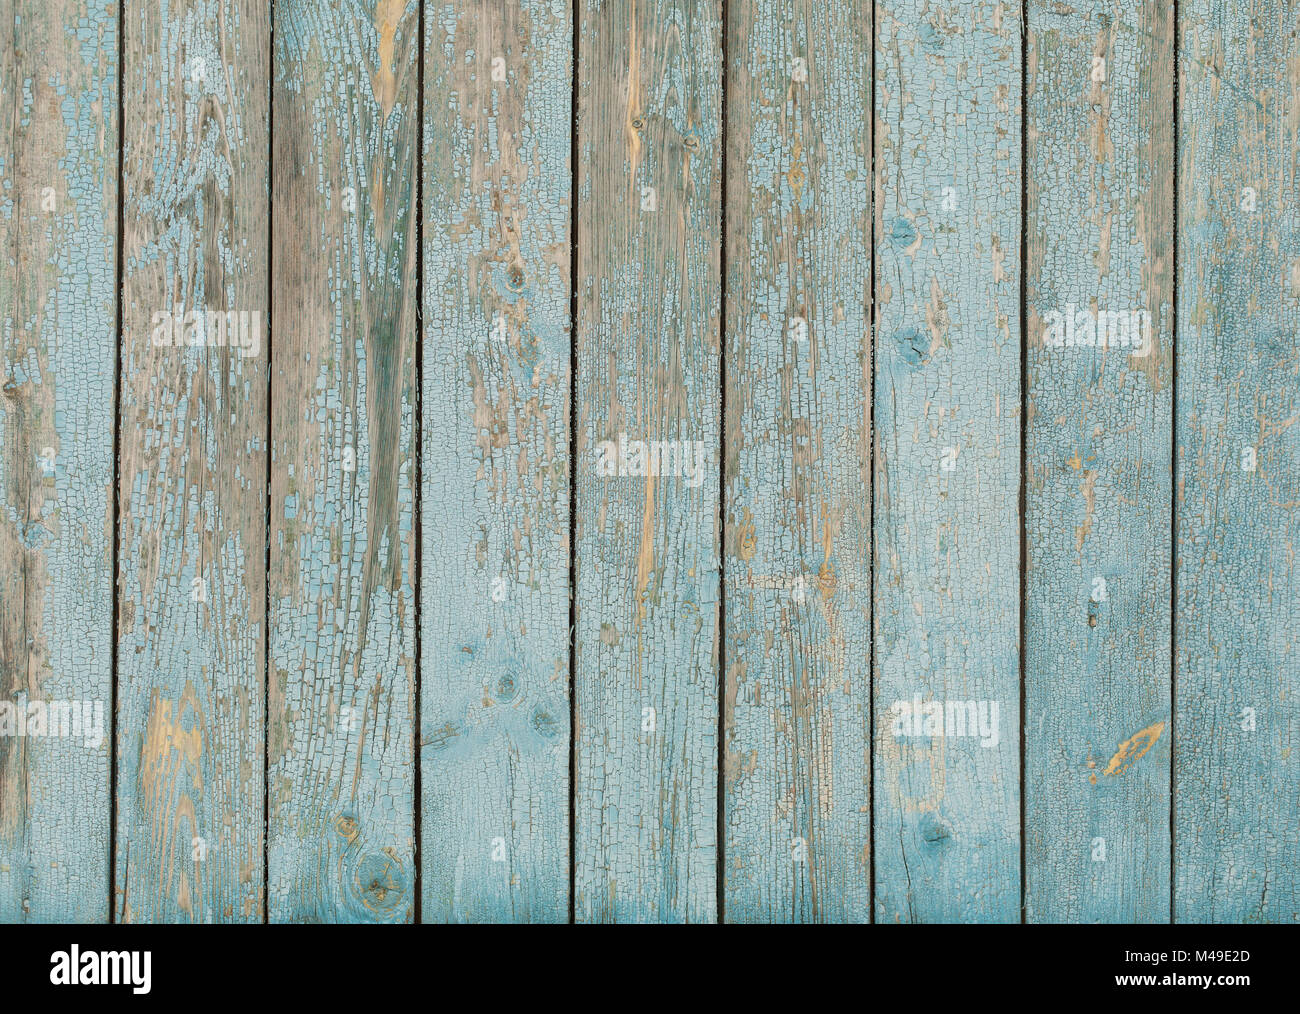 La texture du bois peint bleu ancien Banque D'Images